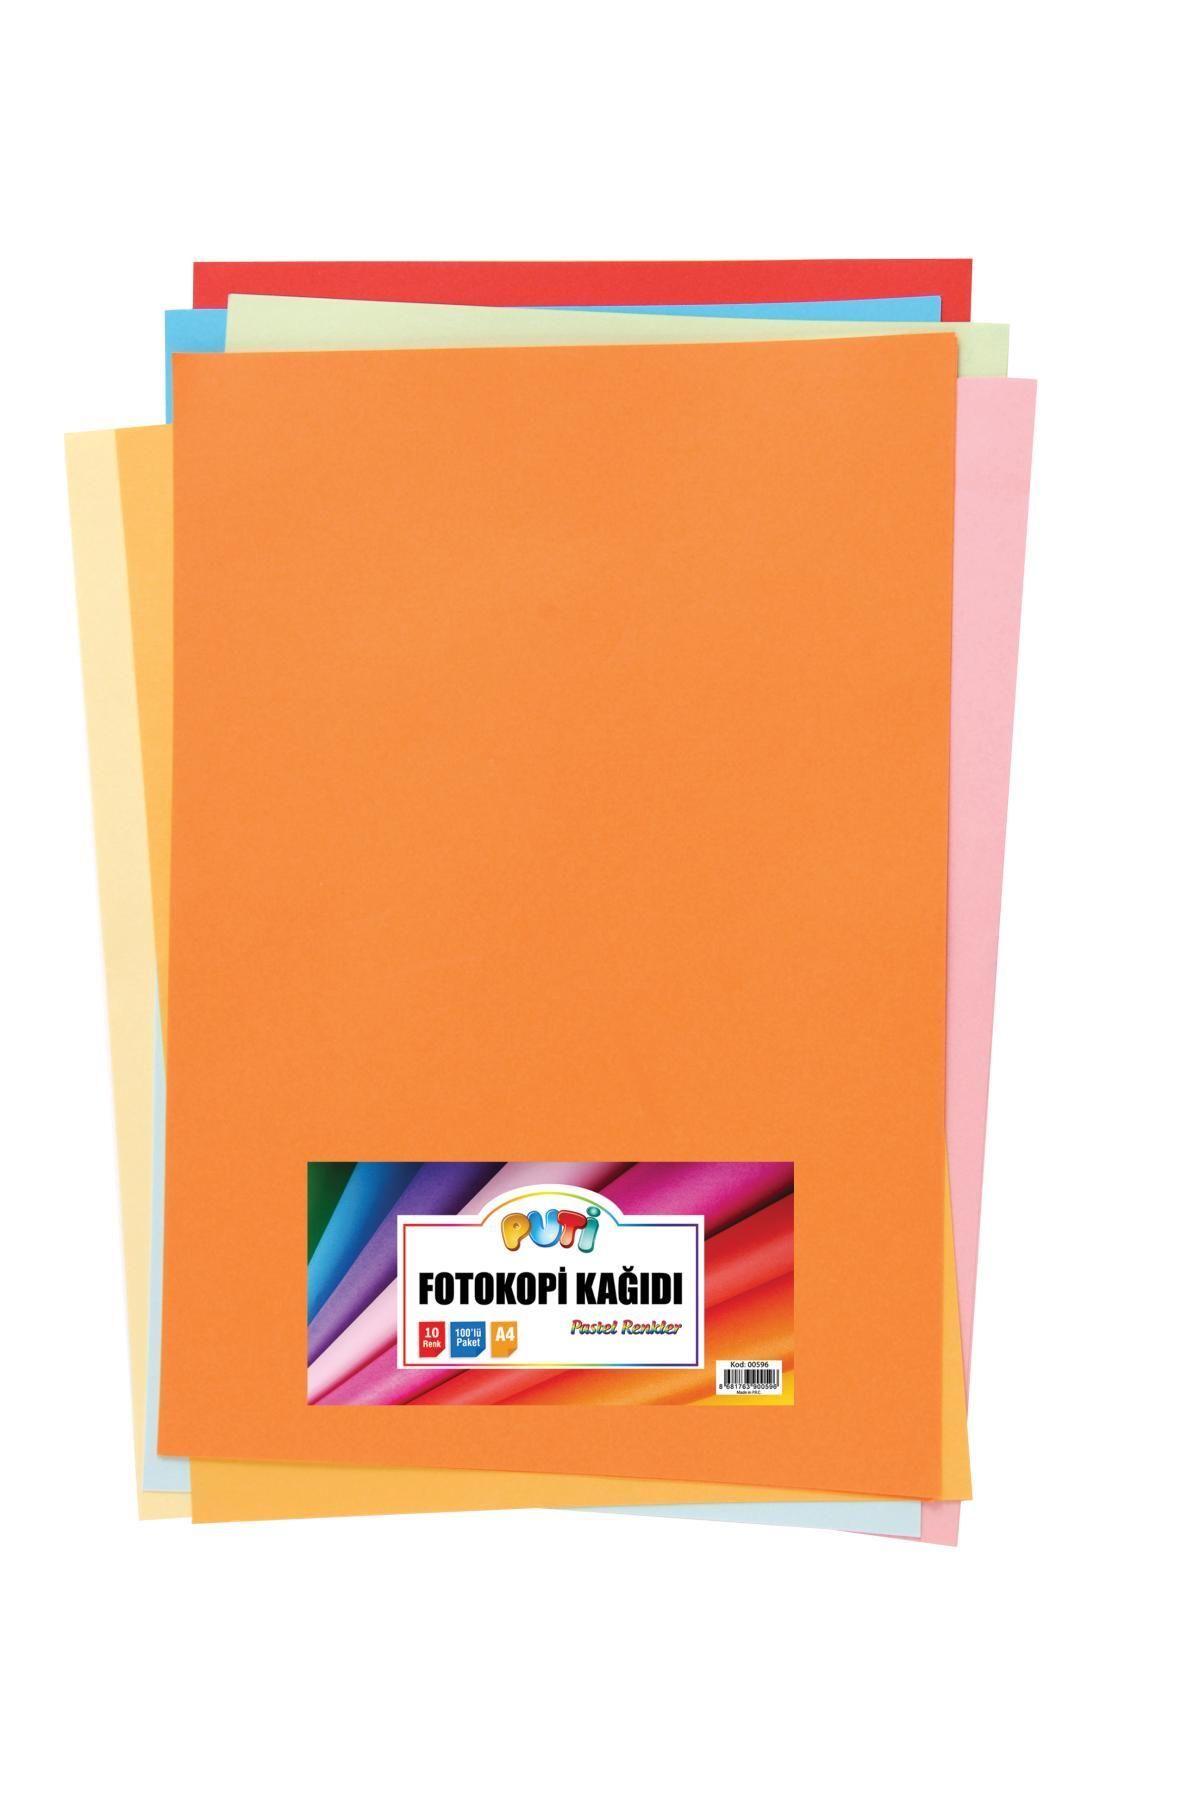 Genel Markalar Puti Renkli Fotokopi Kağıdı 100 Lü 10 Renk Karışık 00596